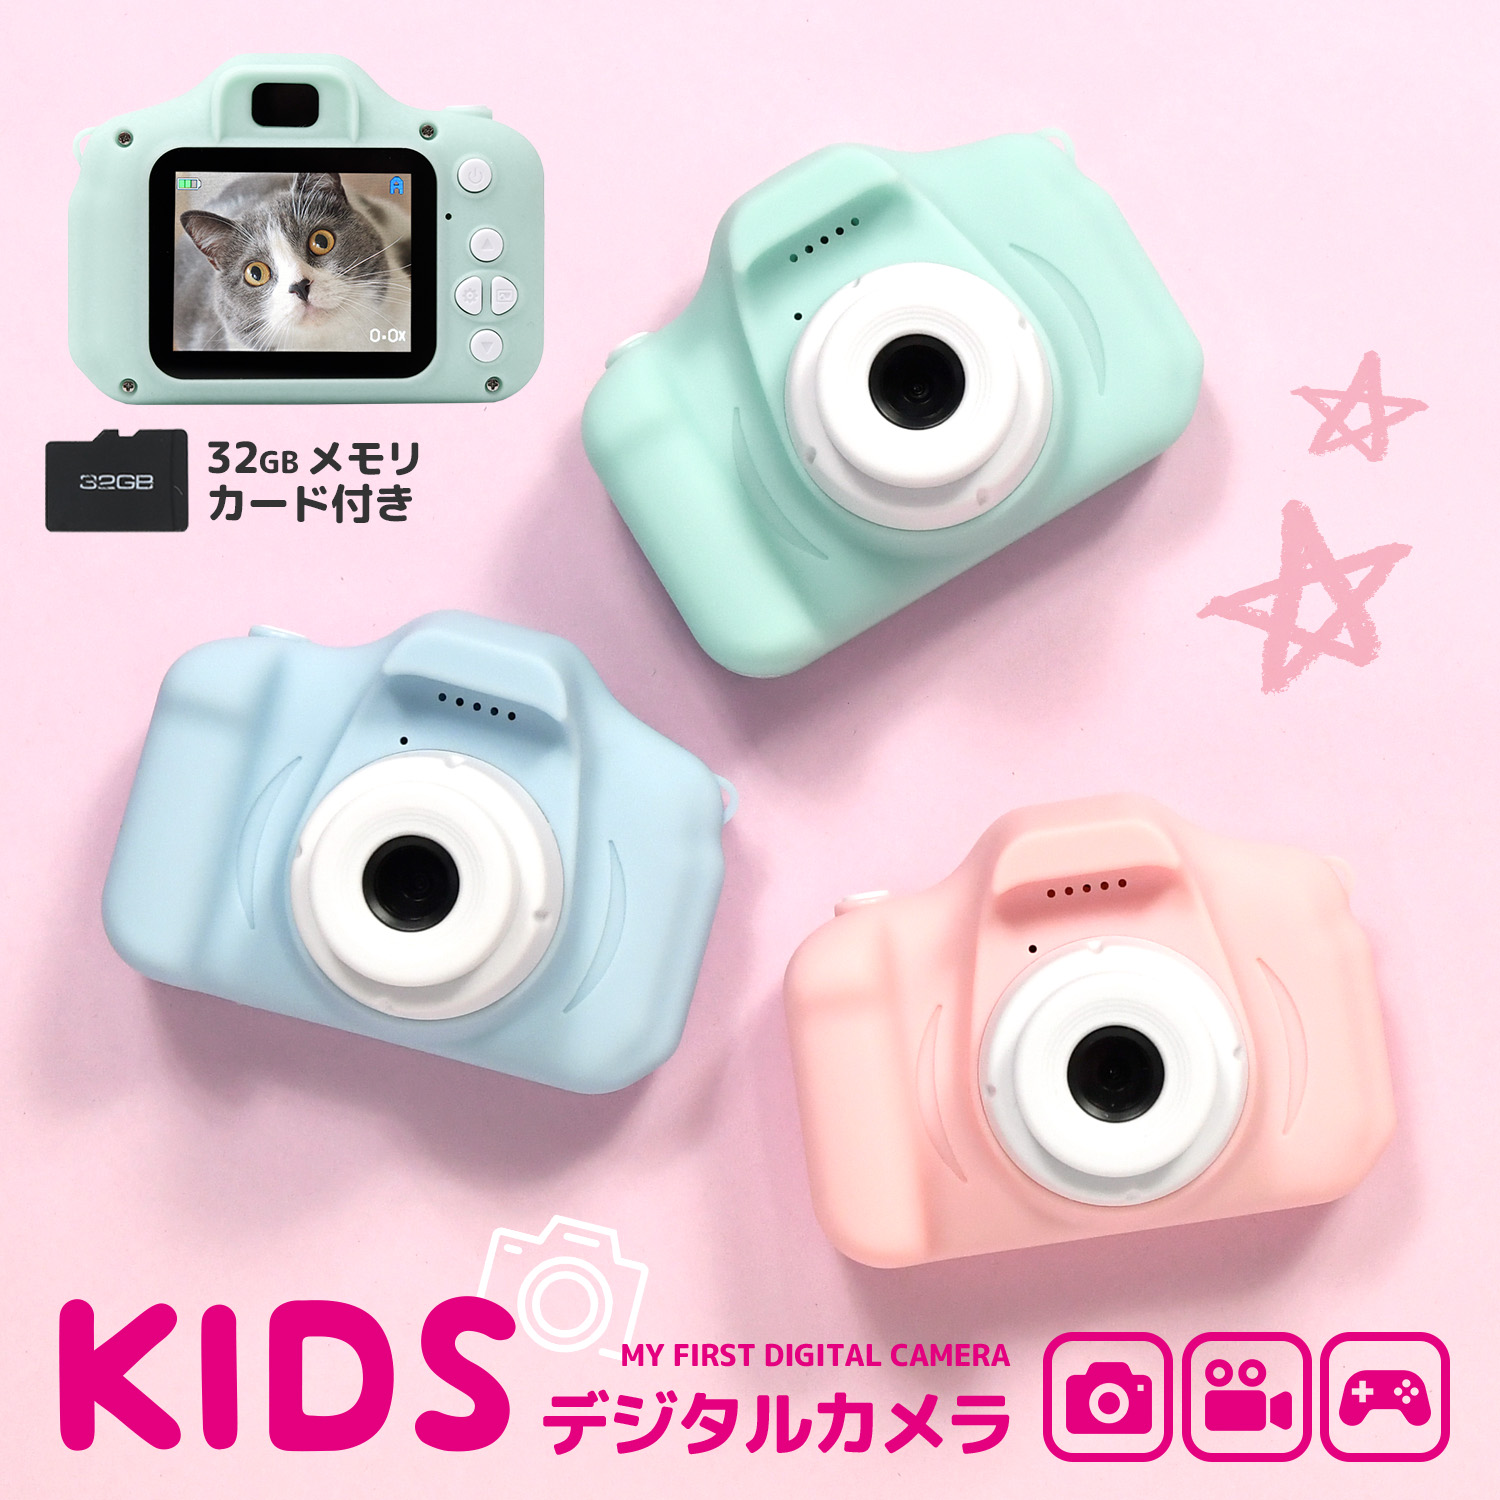 ❇️子供用 デジタルカメラ ❇️ 動画 USB充電式 32GB SDカード付